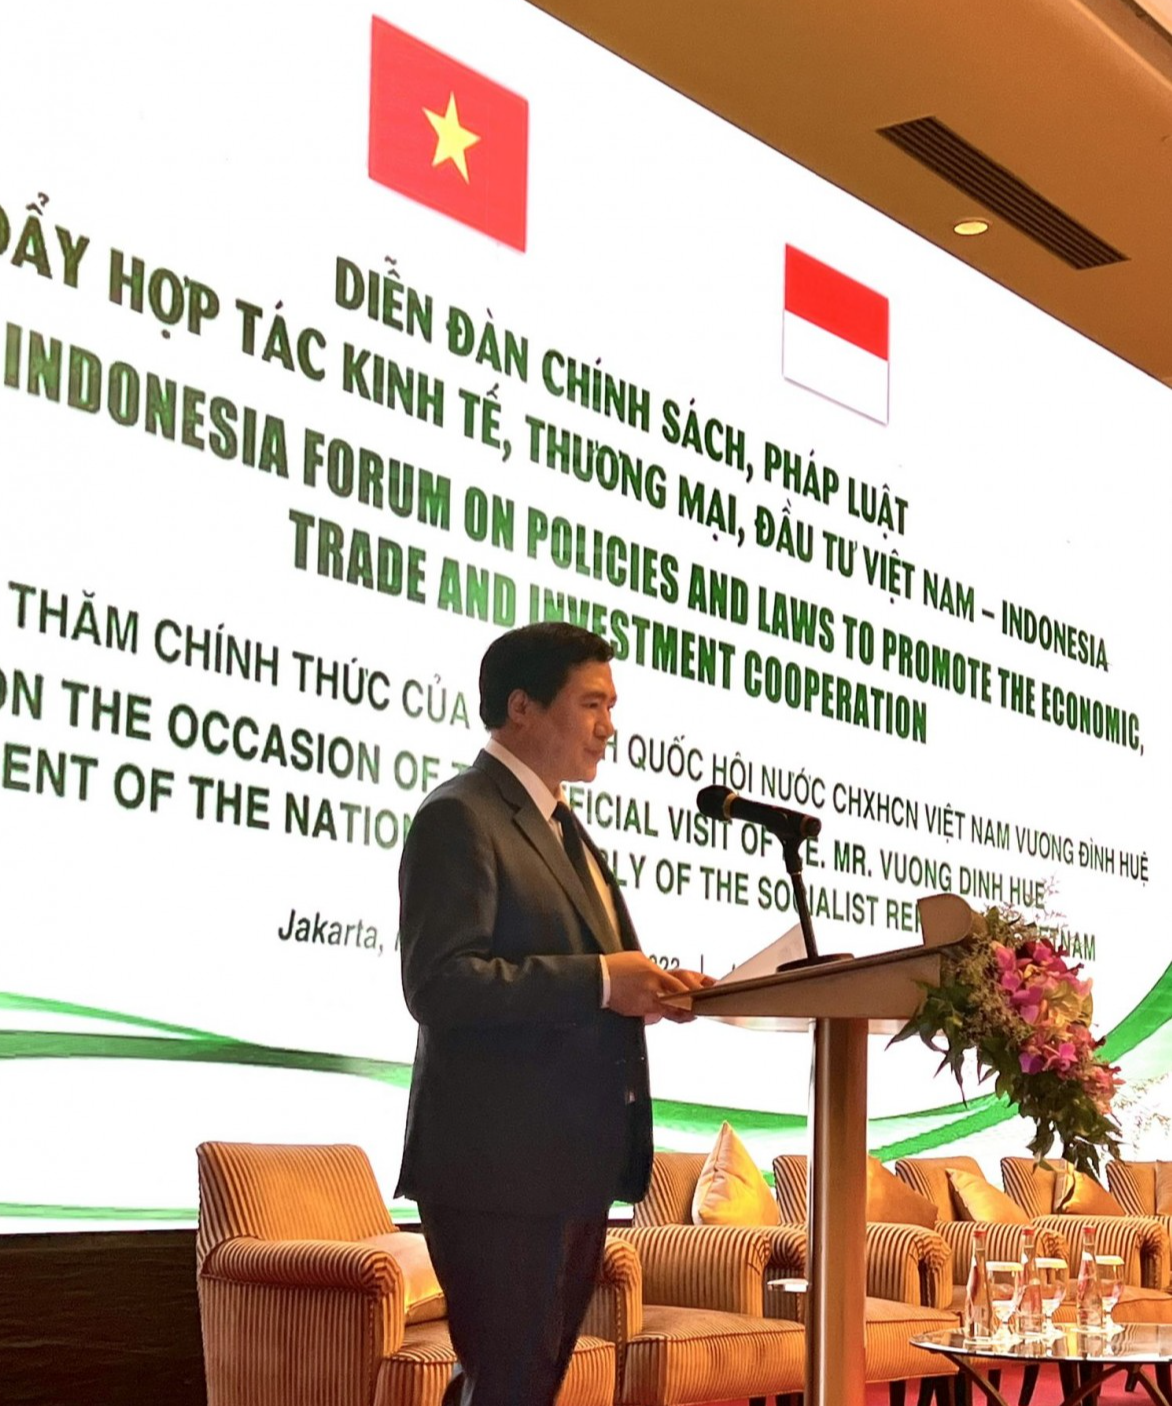 Thứ trưởng Nguyễn Sinh Nhật Tân giới thiệu một số nét nổi bật về chính sách công nghiệp, thương mại của Việt Nam